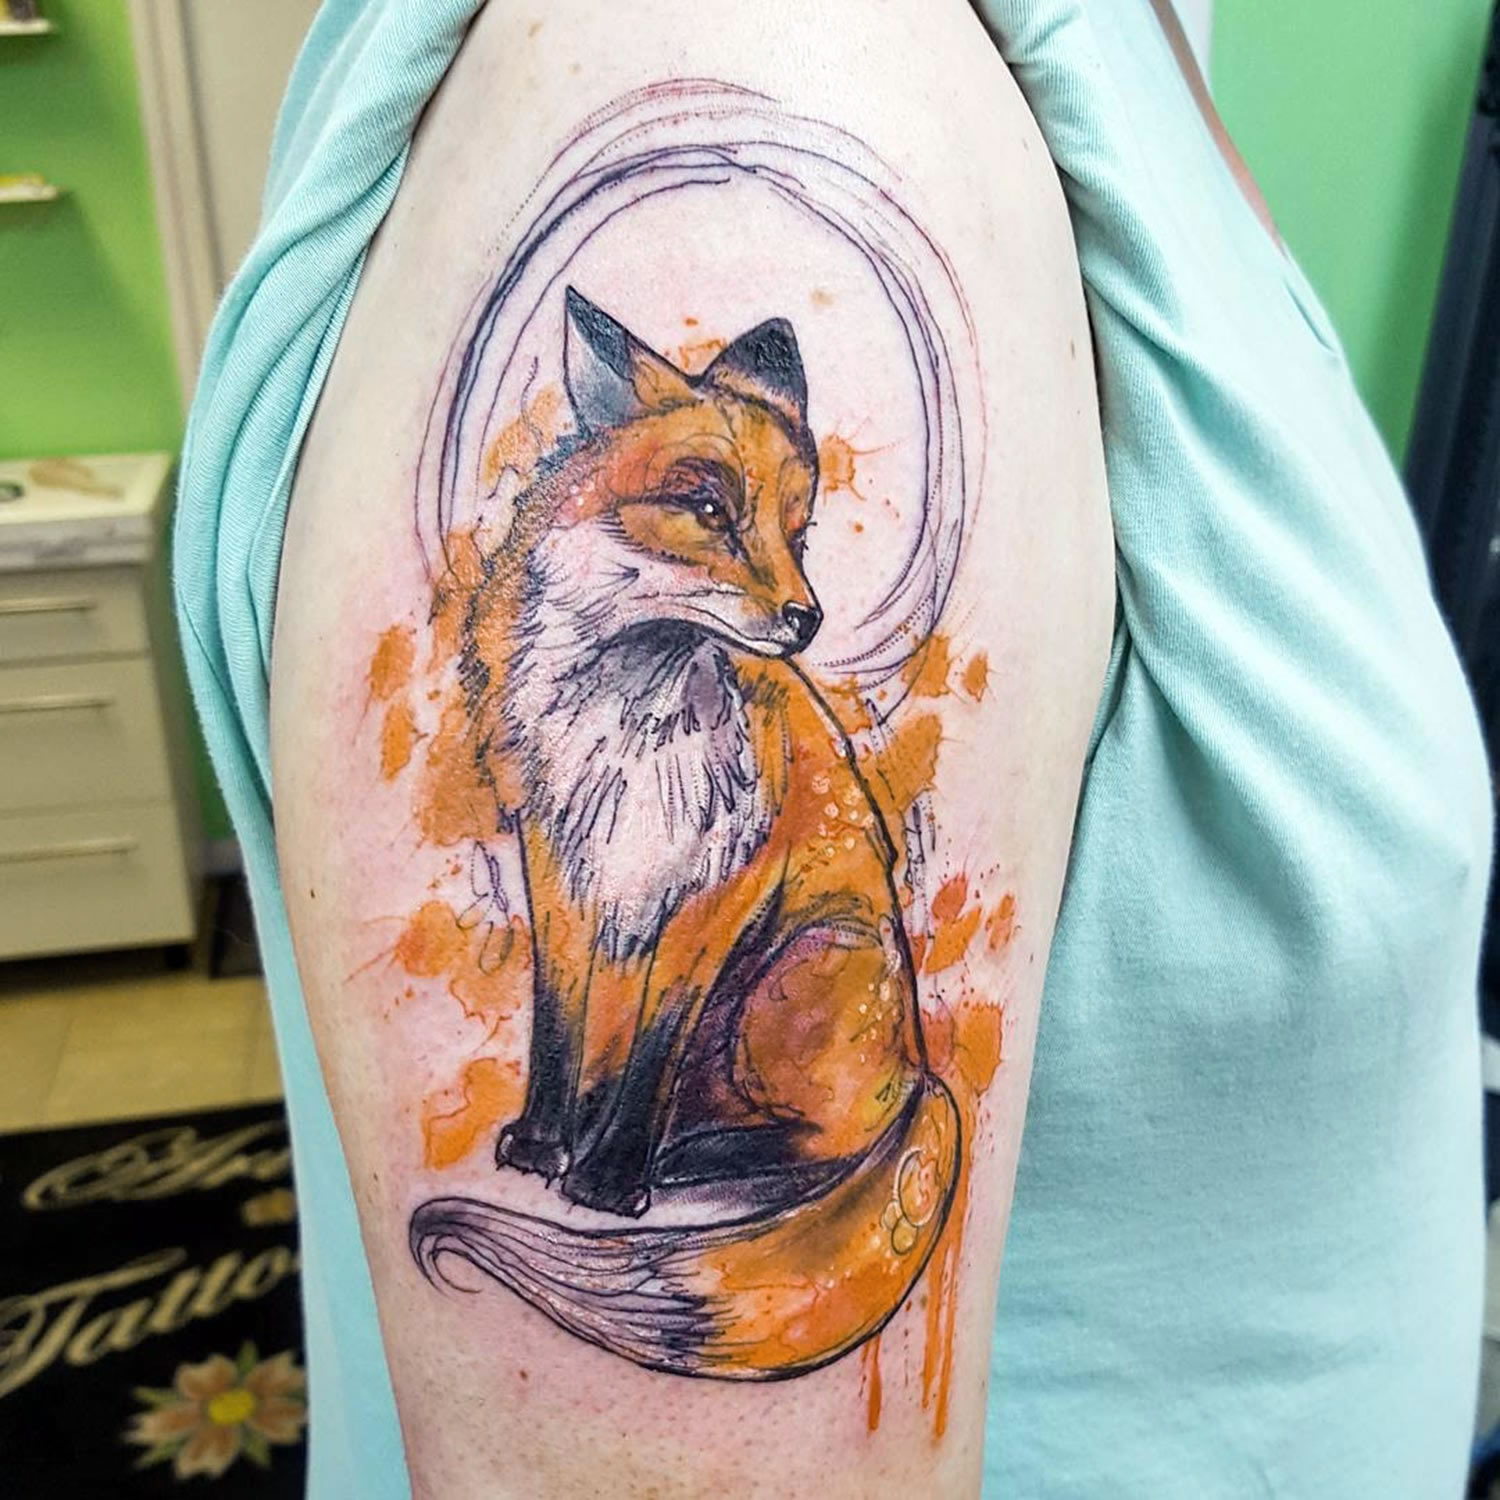 Watercolor fox by Joanne Baker